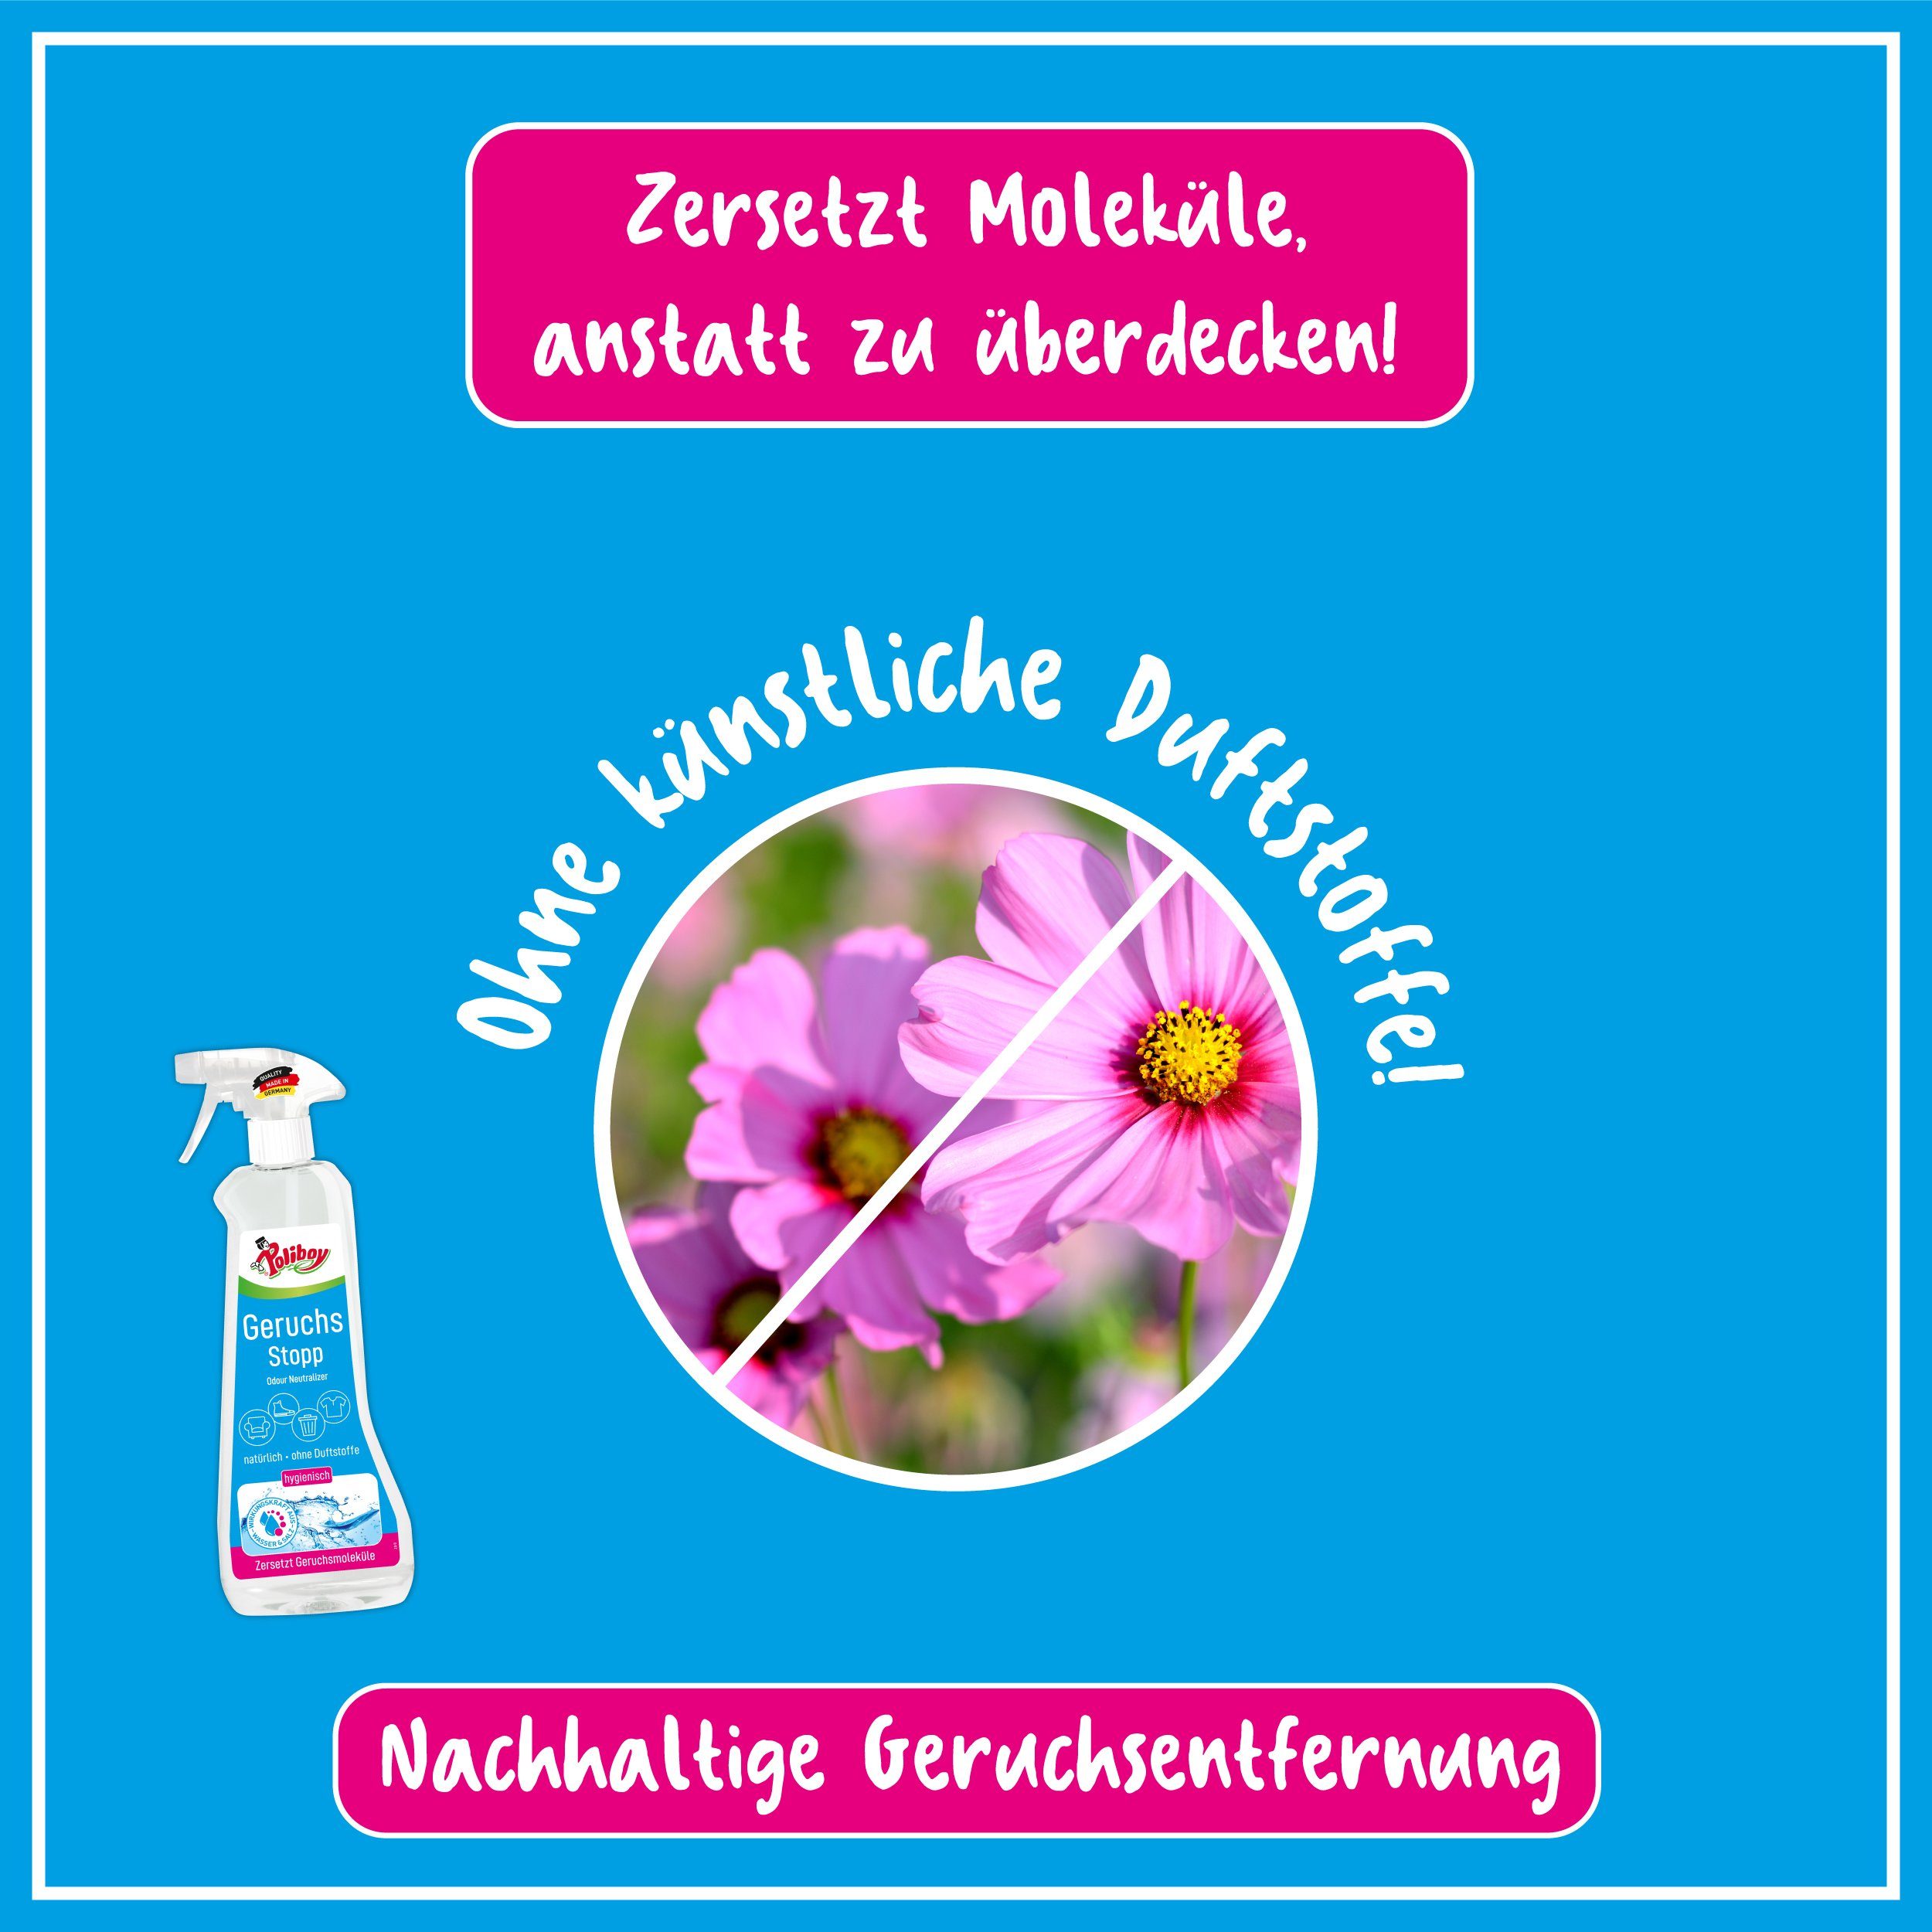 Made (verbannt Gerüche in Aktiv Oberflächen Reinigungsspray - Geruchs Stopp Germany) - schlechte poliboy von 500ml